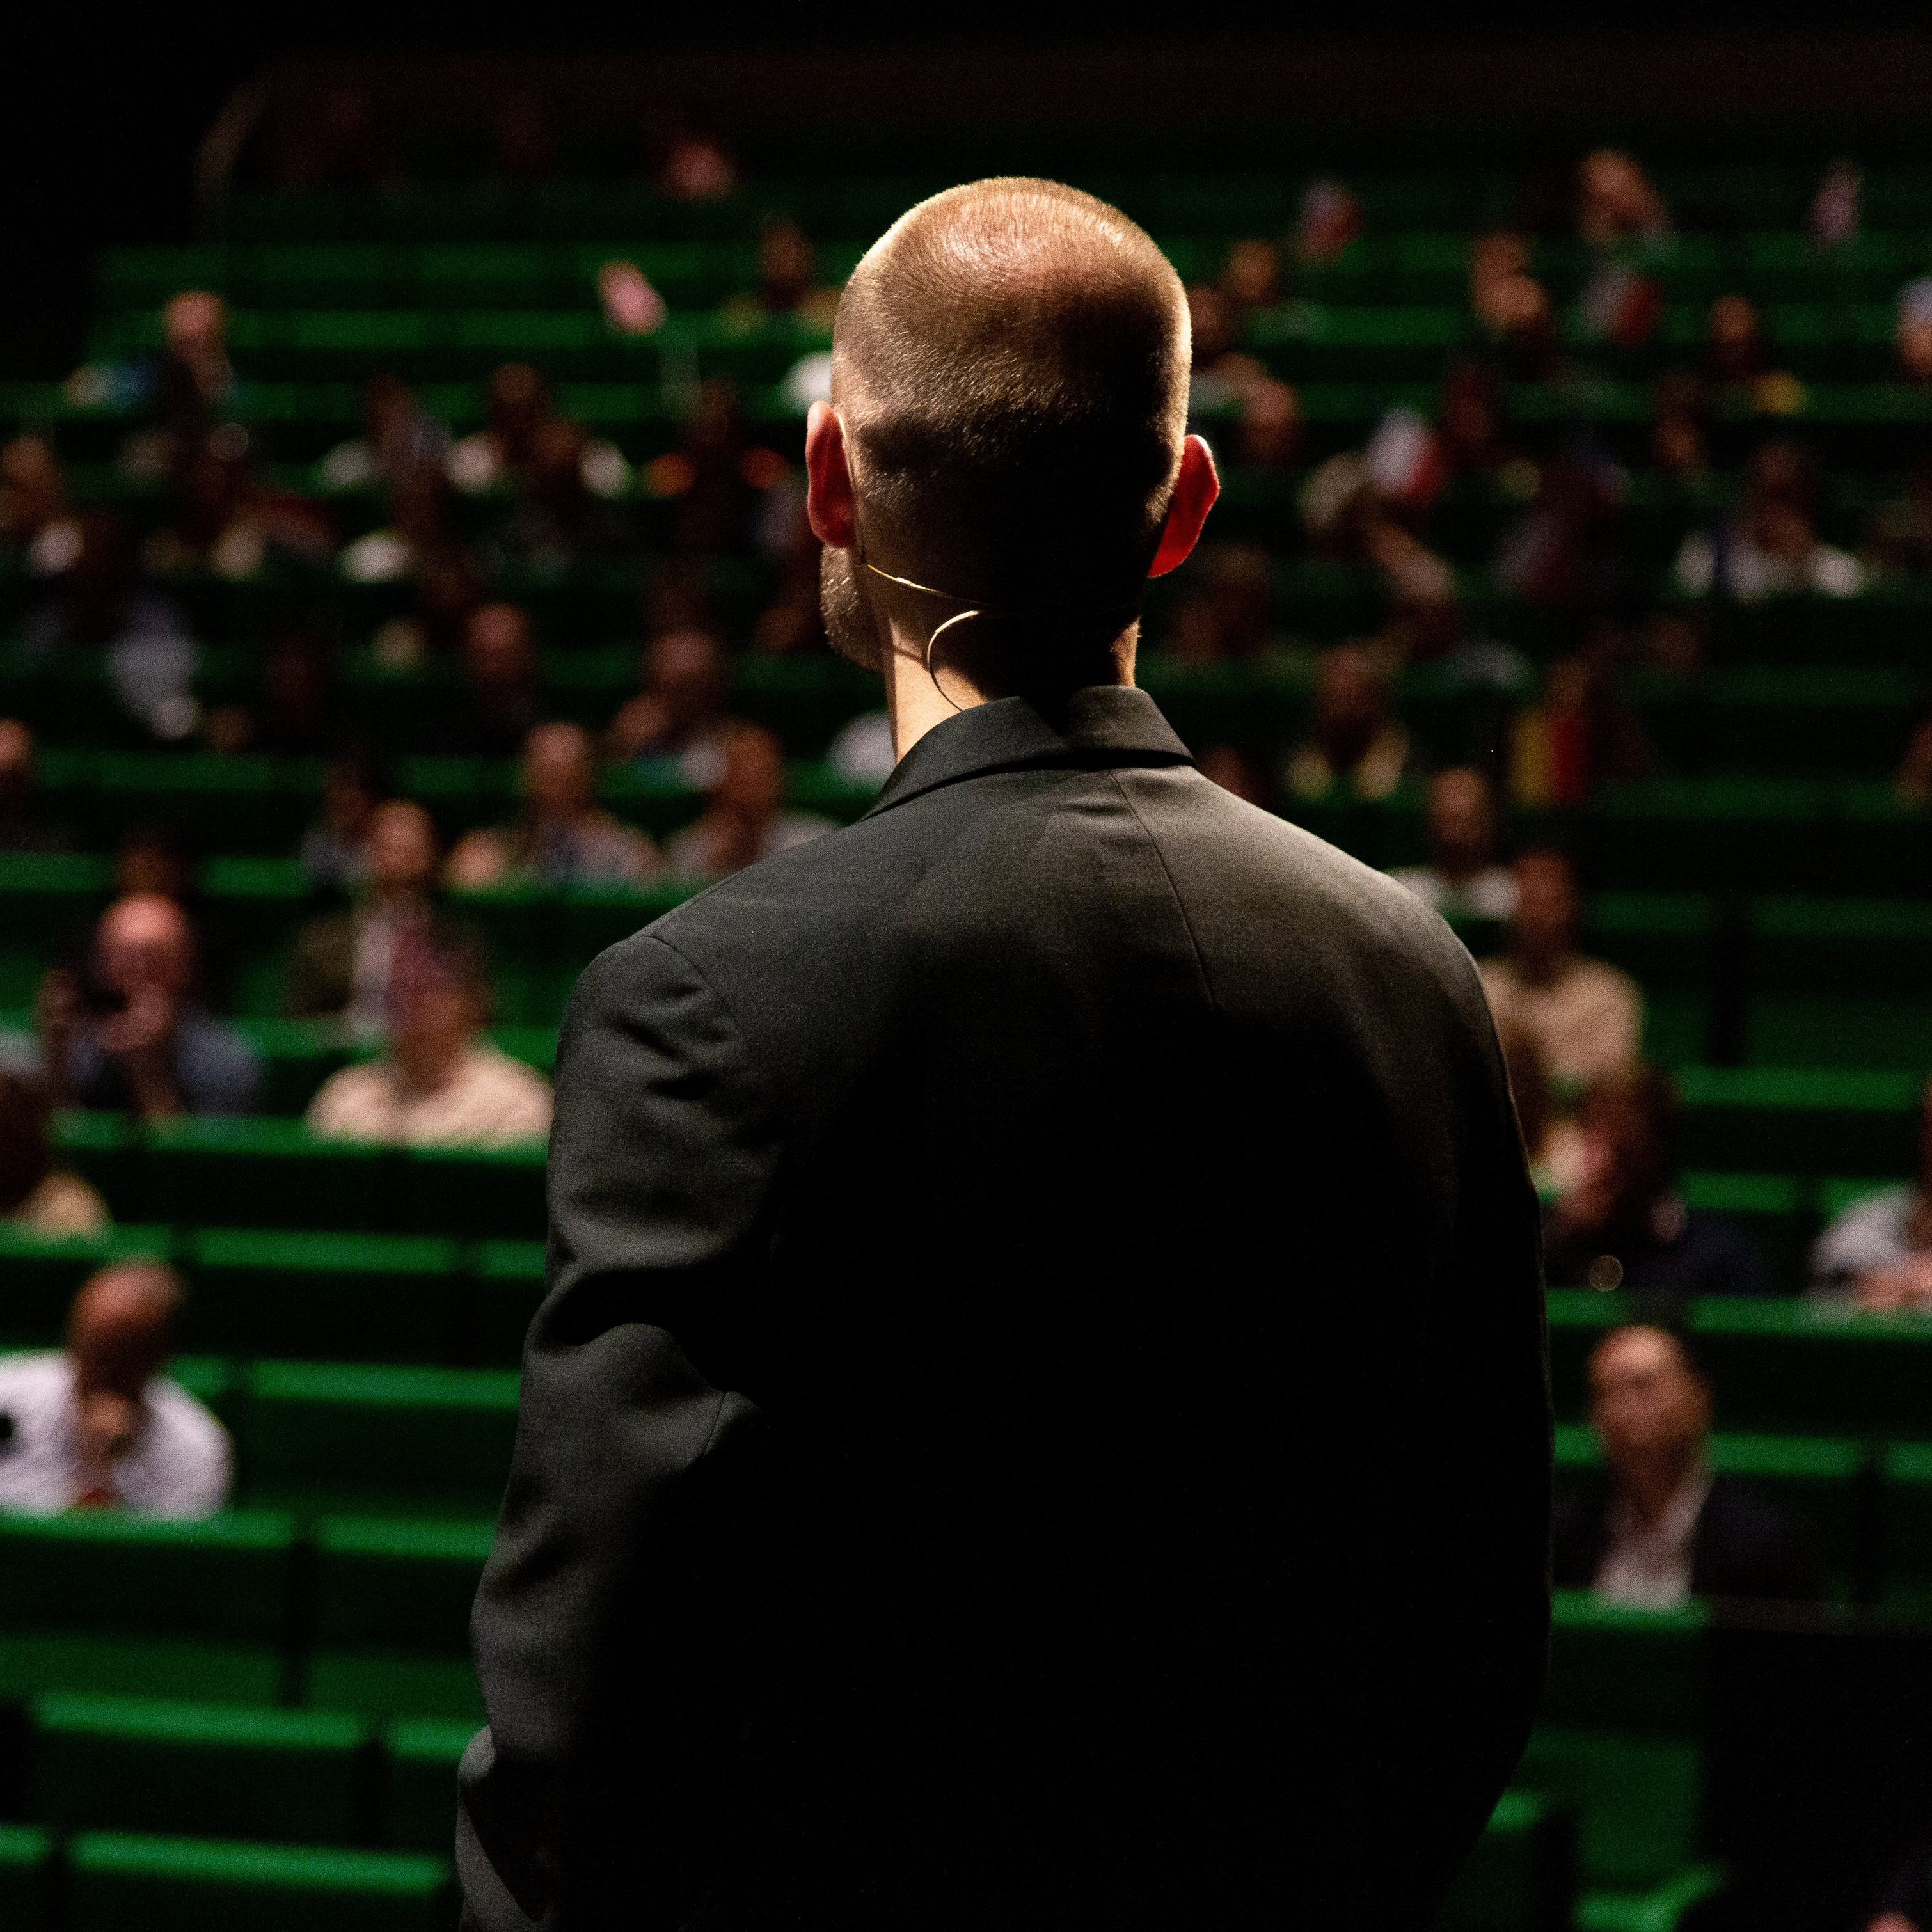 Мужчина в черном костюме стоит перед аудиторией в комнате с зелеными сиденьями.